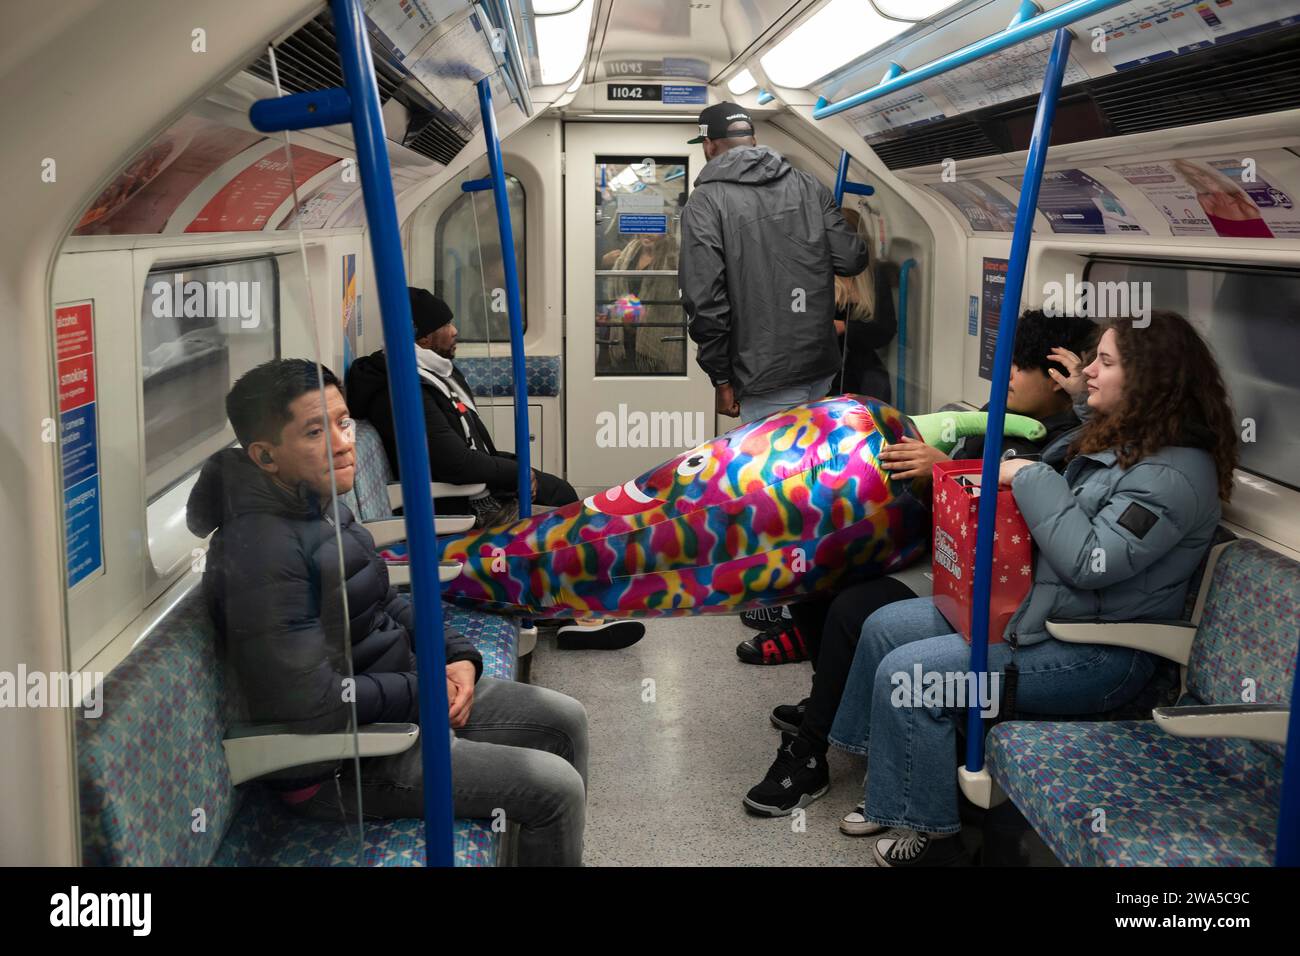 Les gens voyagent sur le métro de Londres transportant un grand jouet gonflable, Londres, Angleterre, Royaume-Uni. Banque D'Images